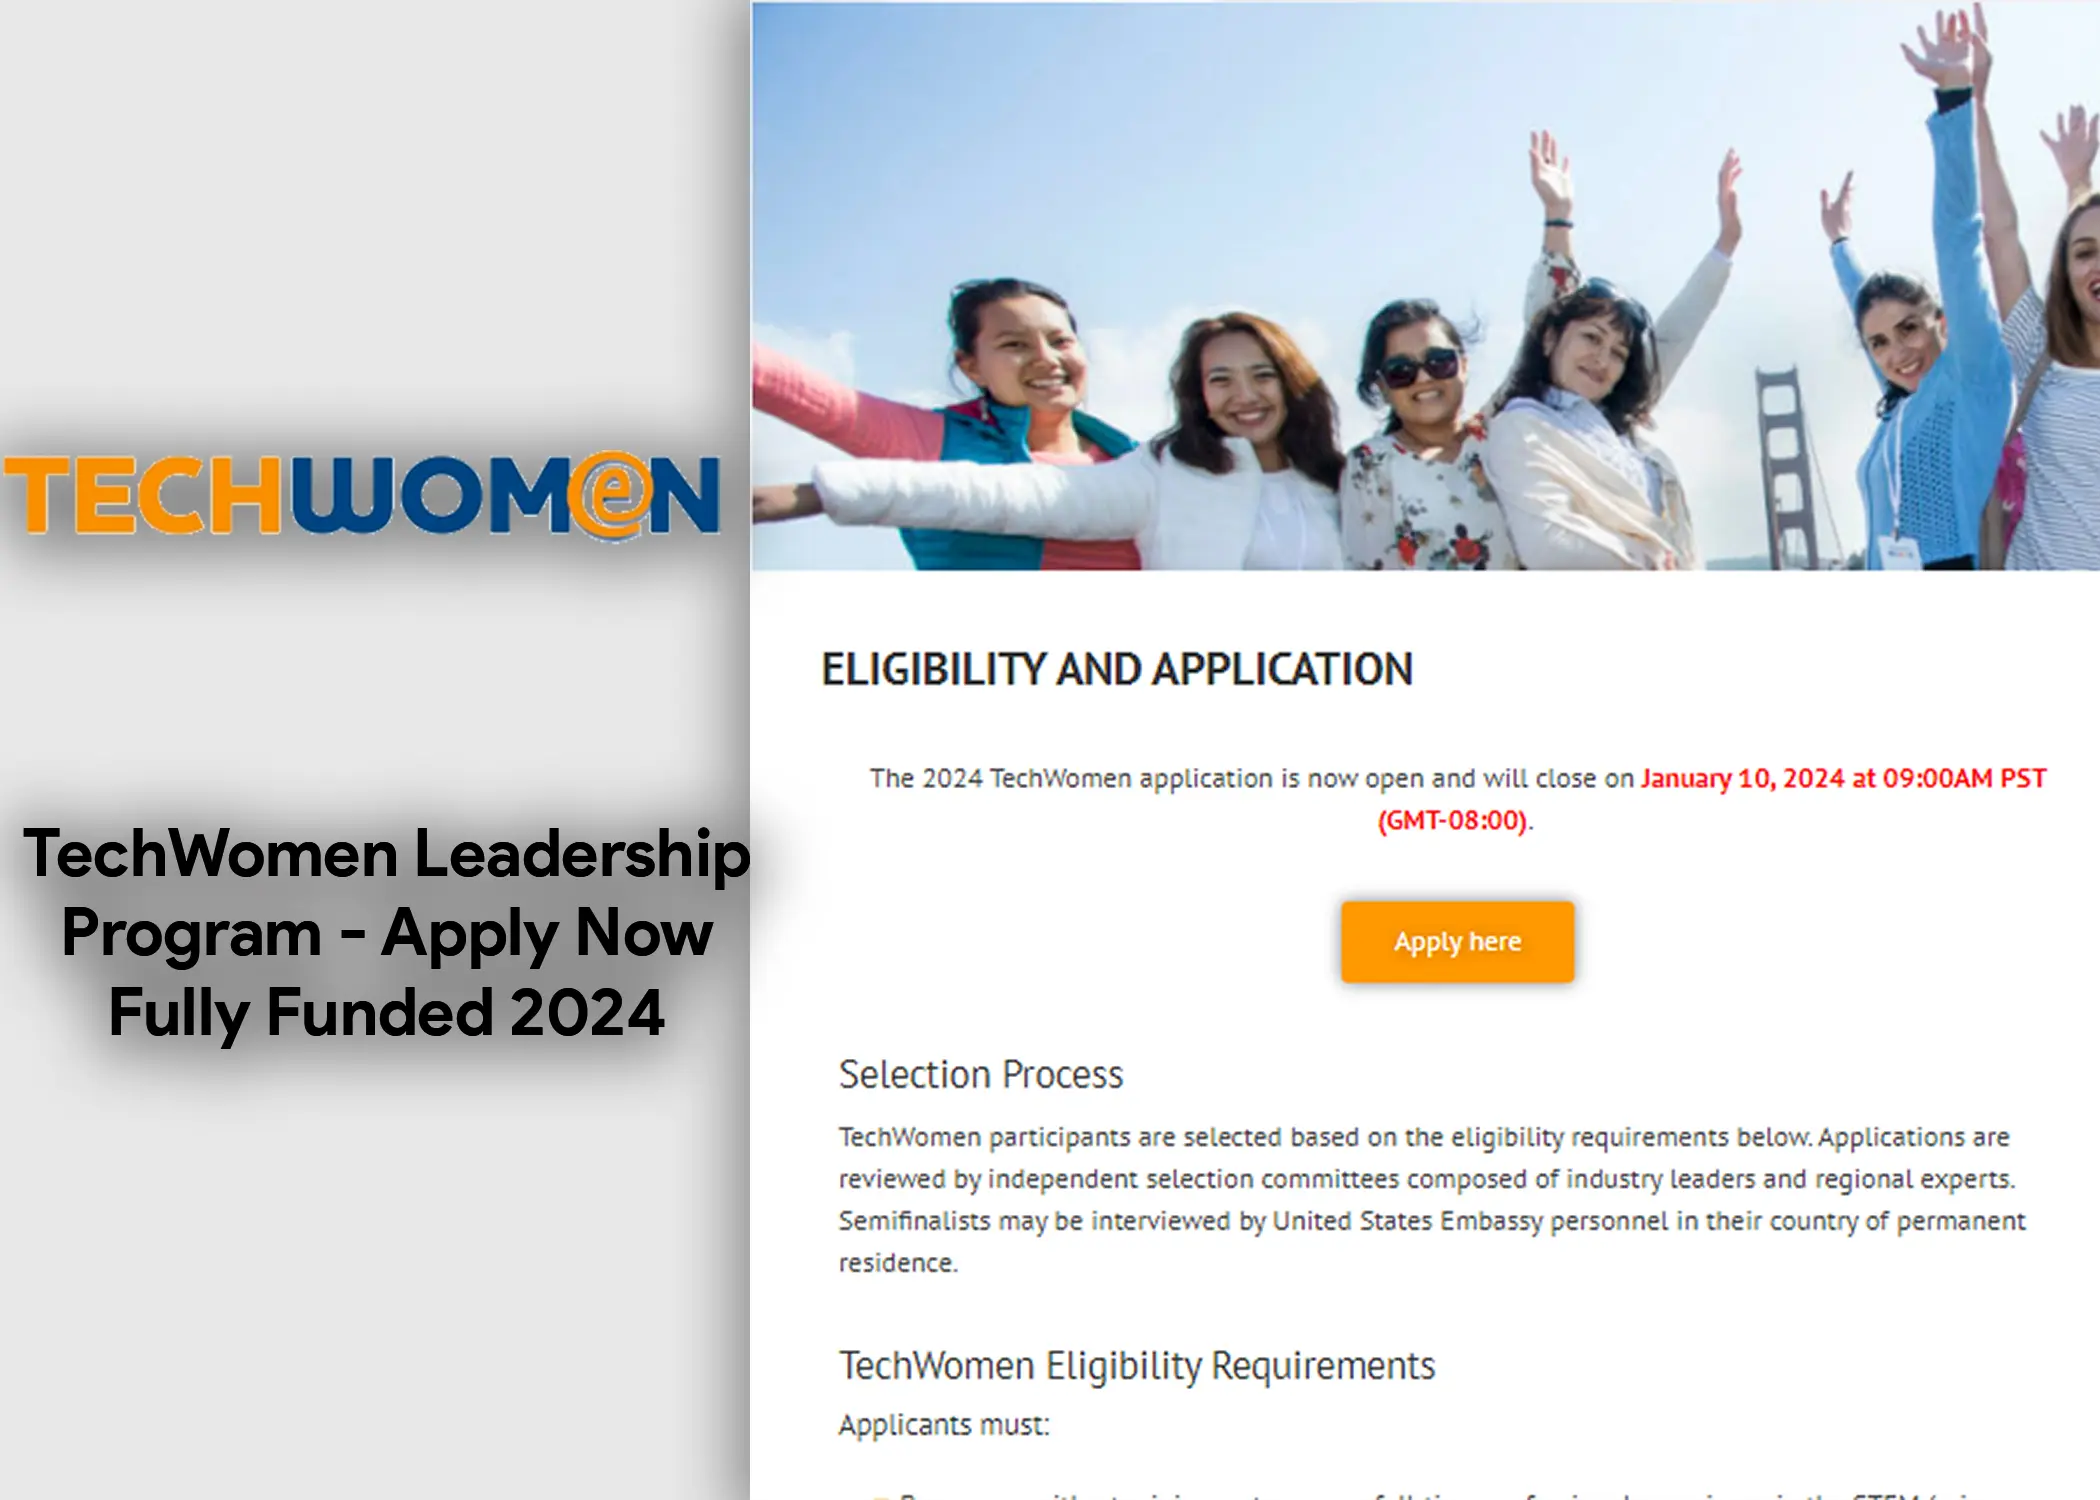 TechWomen Leadership Program - Apply Now, Fully Funded 2024